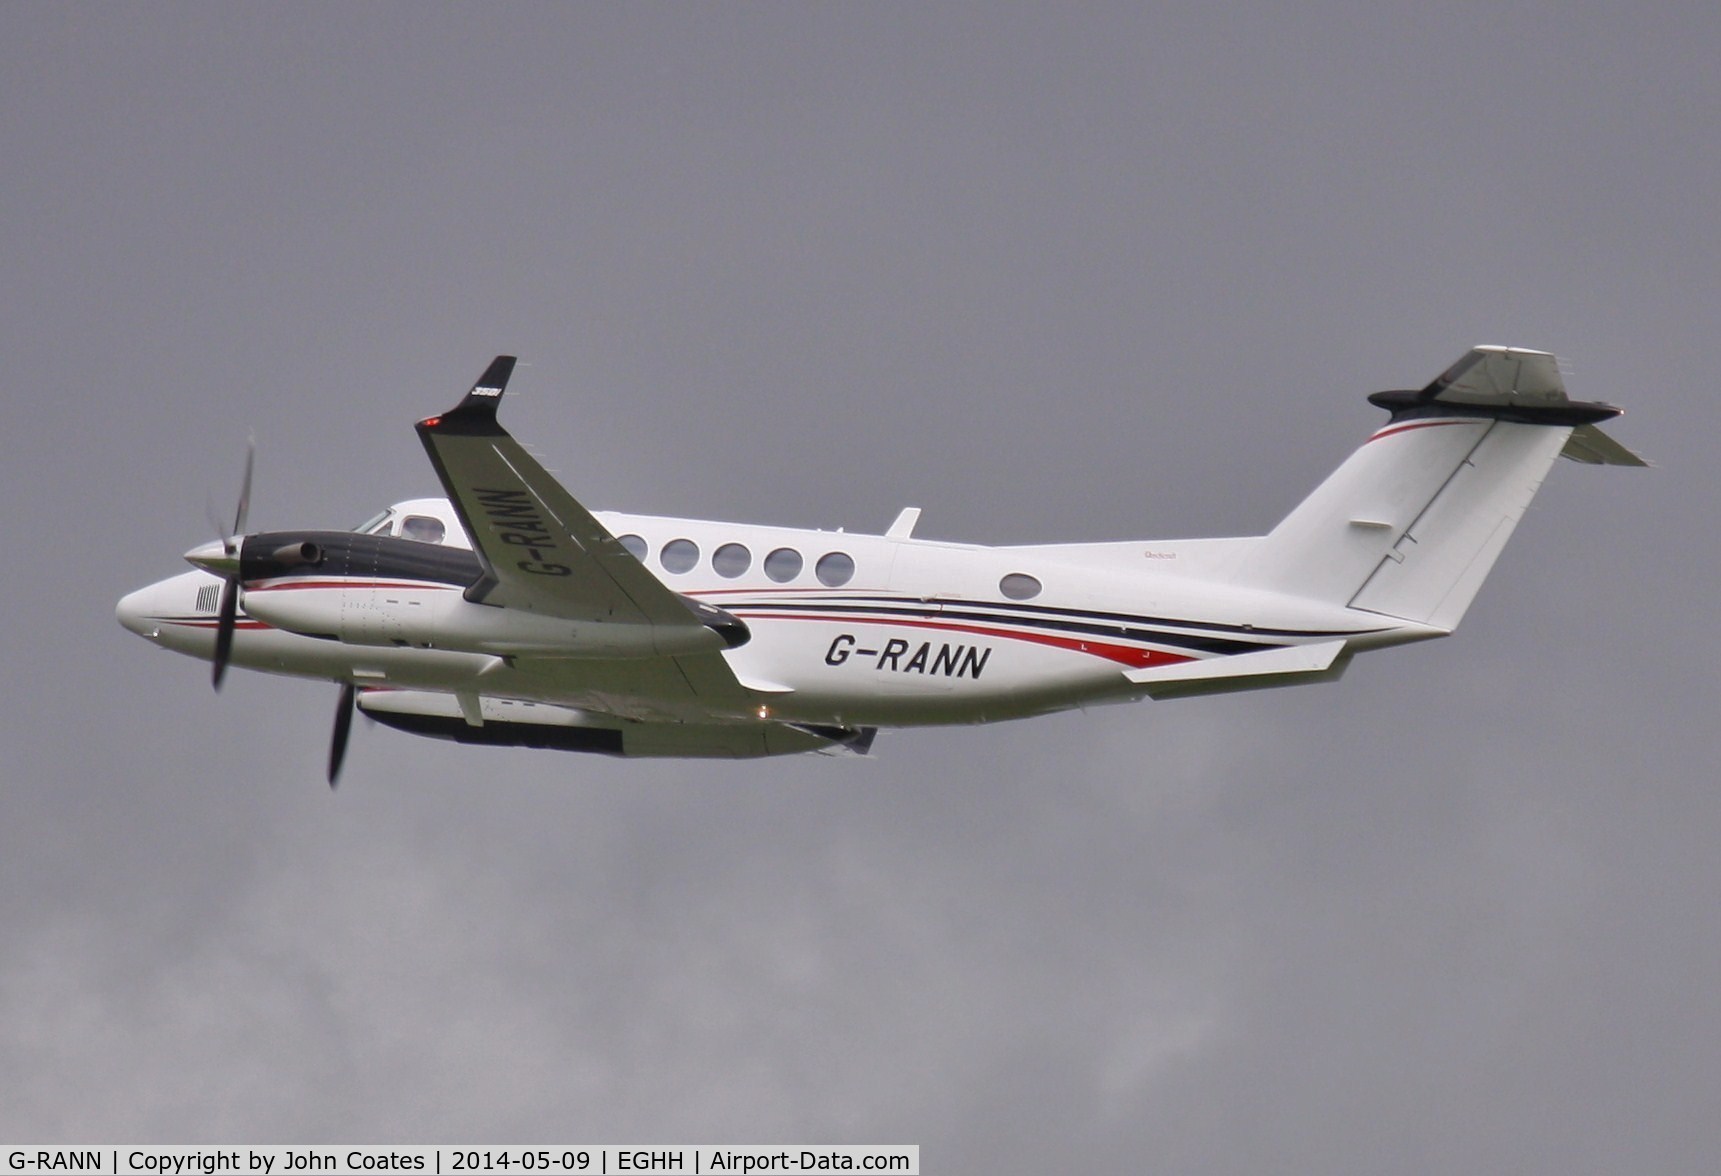 G-RANN, 2013 Beech B300 King Air King Air C/N FL-899, Cega's replacement for N500CS departs